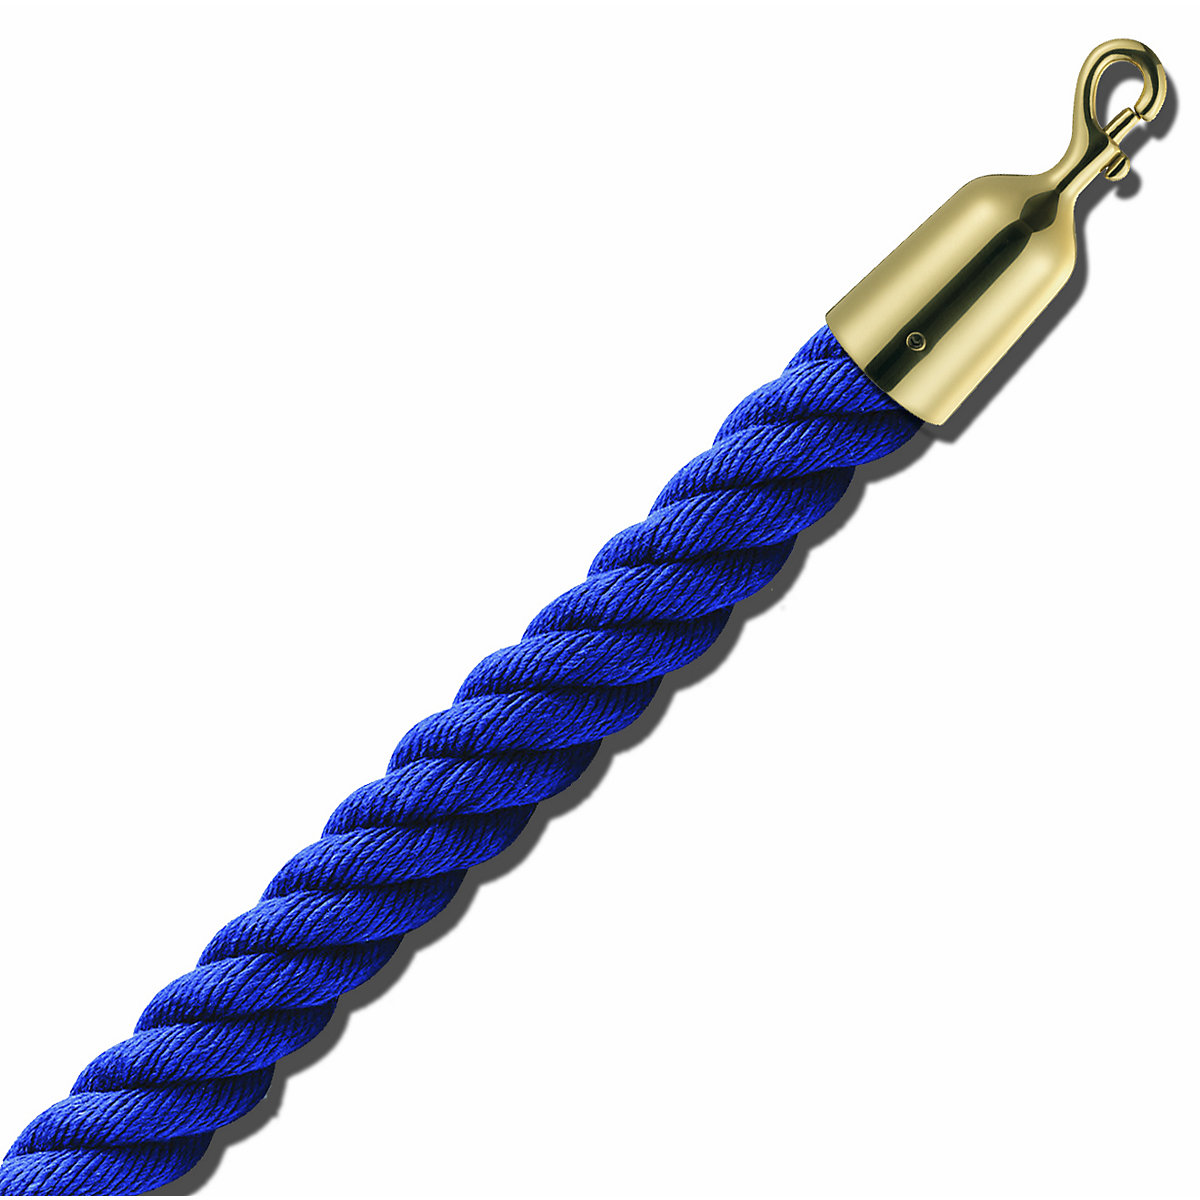 Cordel delimitador de 1,5 m, extremos de latón, cordel azul-5